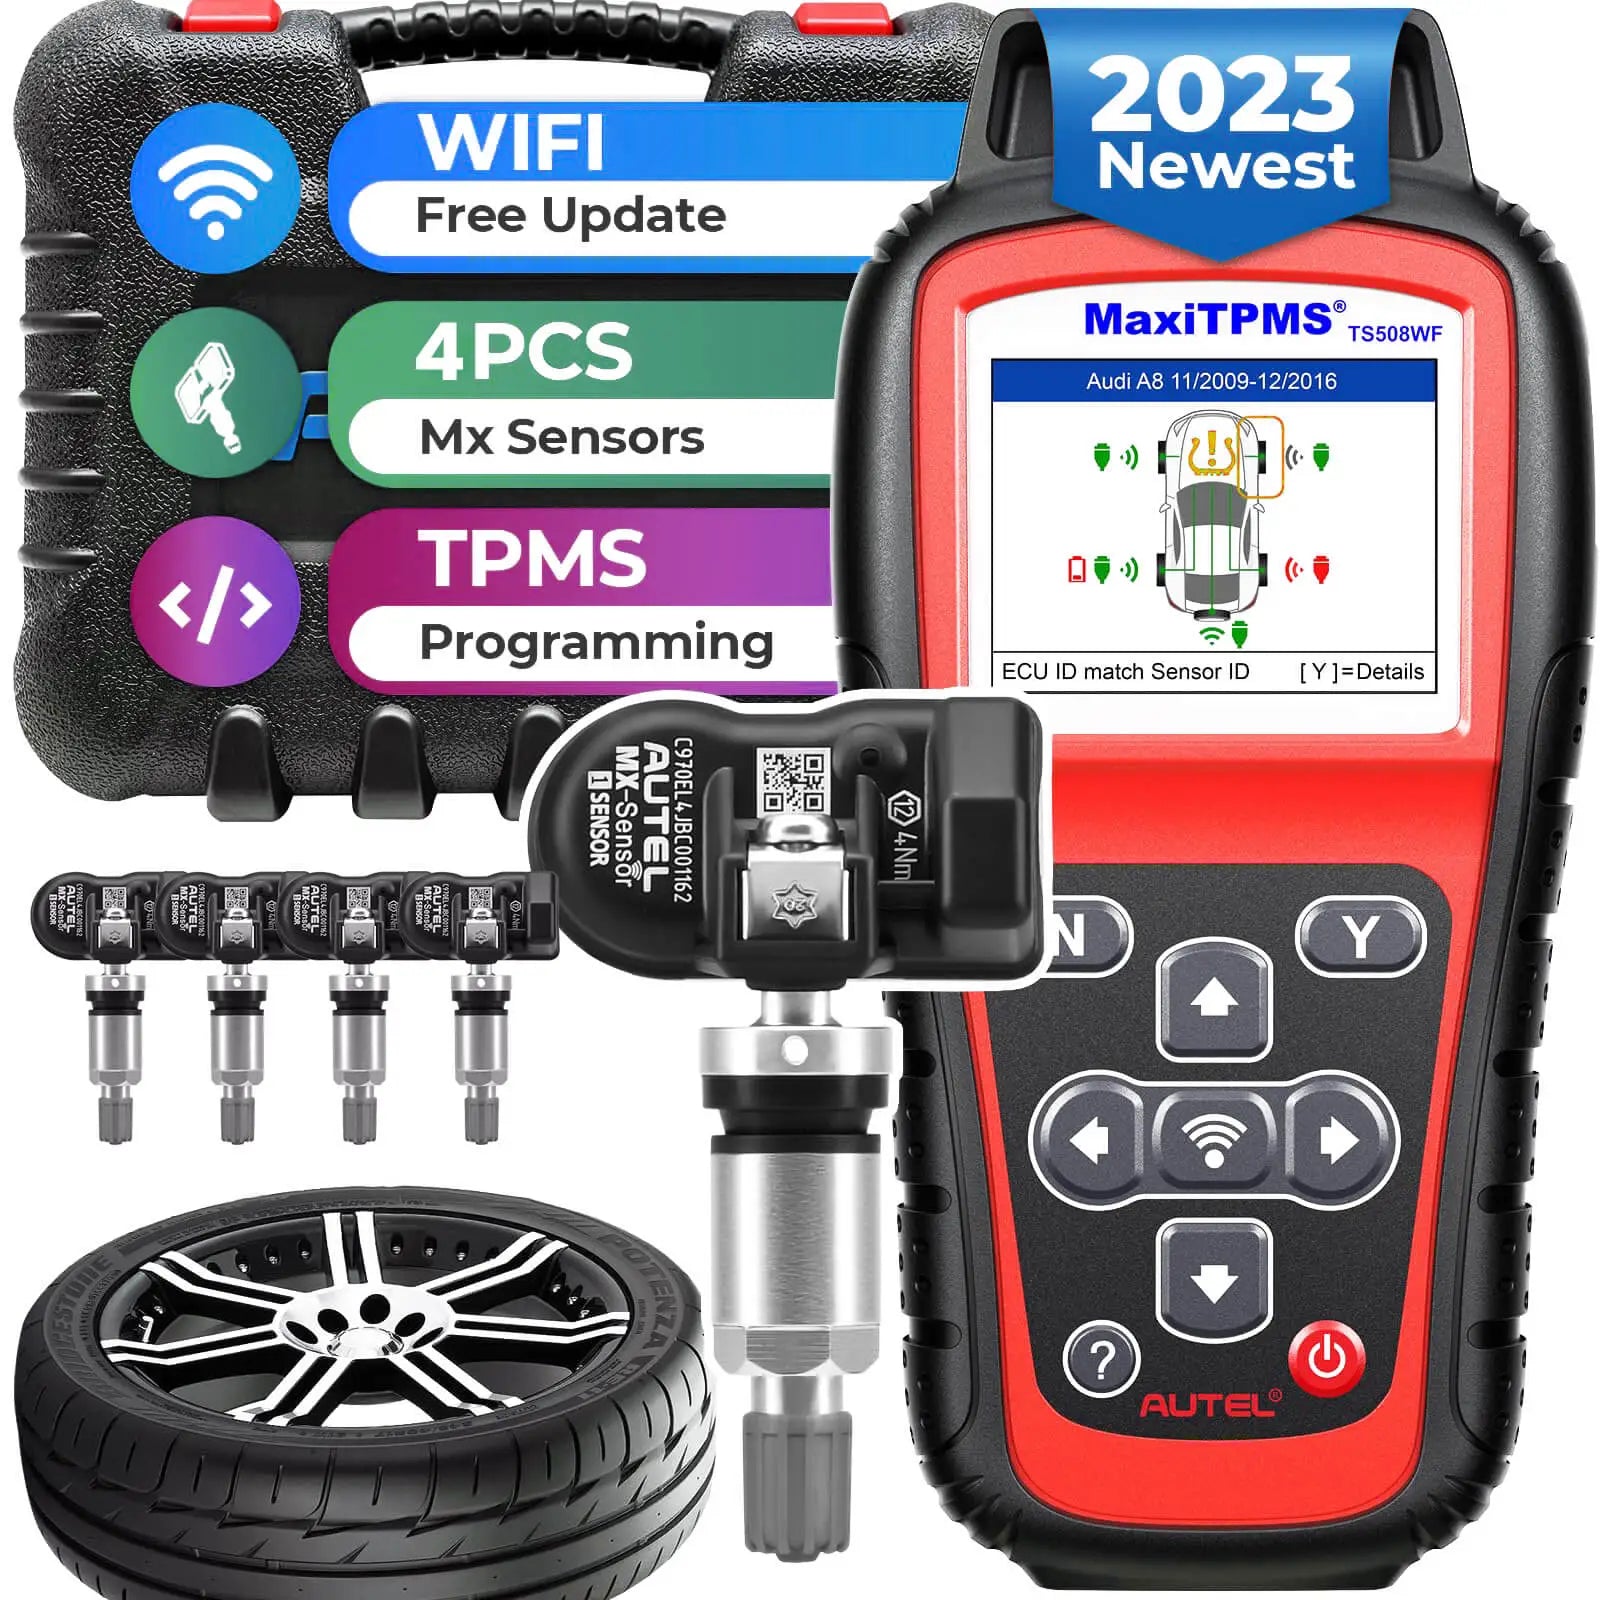 MaxiTPMS TS508WF Autel TPMS Diagnostic & Service Tool Car Tire Pressure Monitoring System, TPMS Reset Tool, Activate & Relearn Sensors